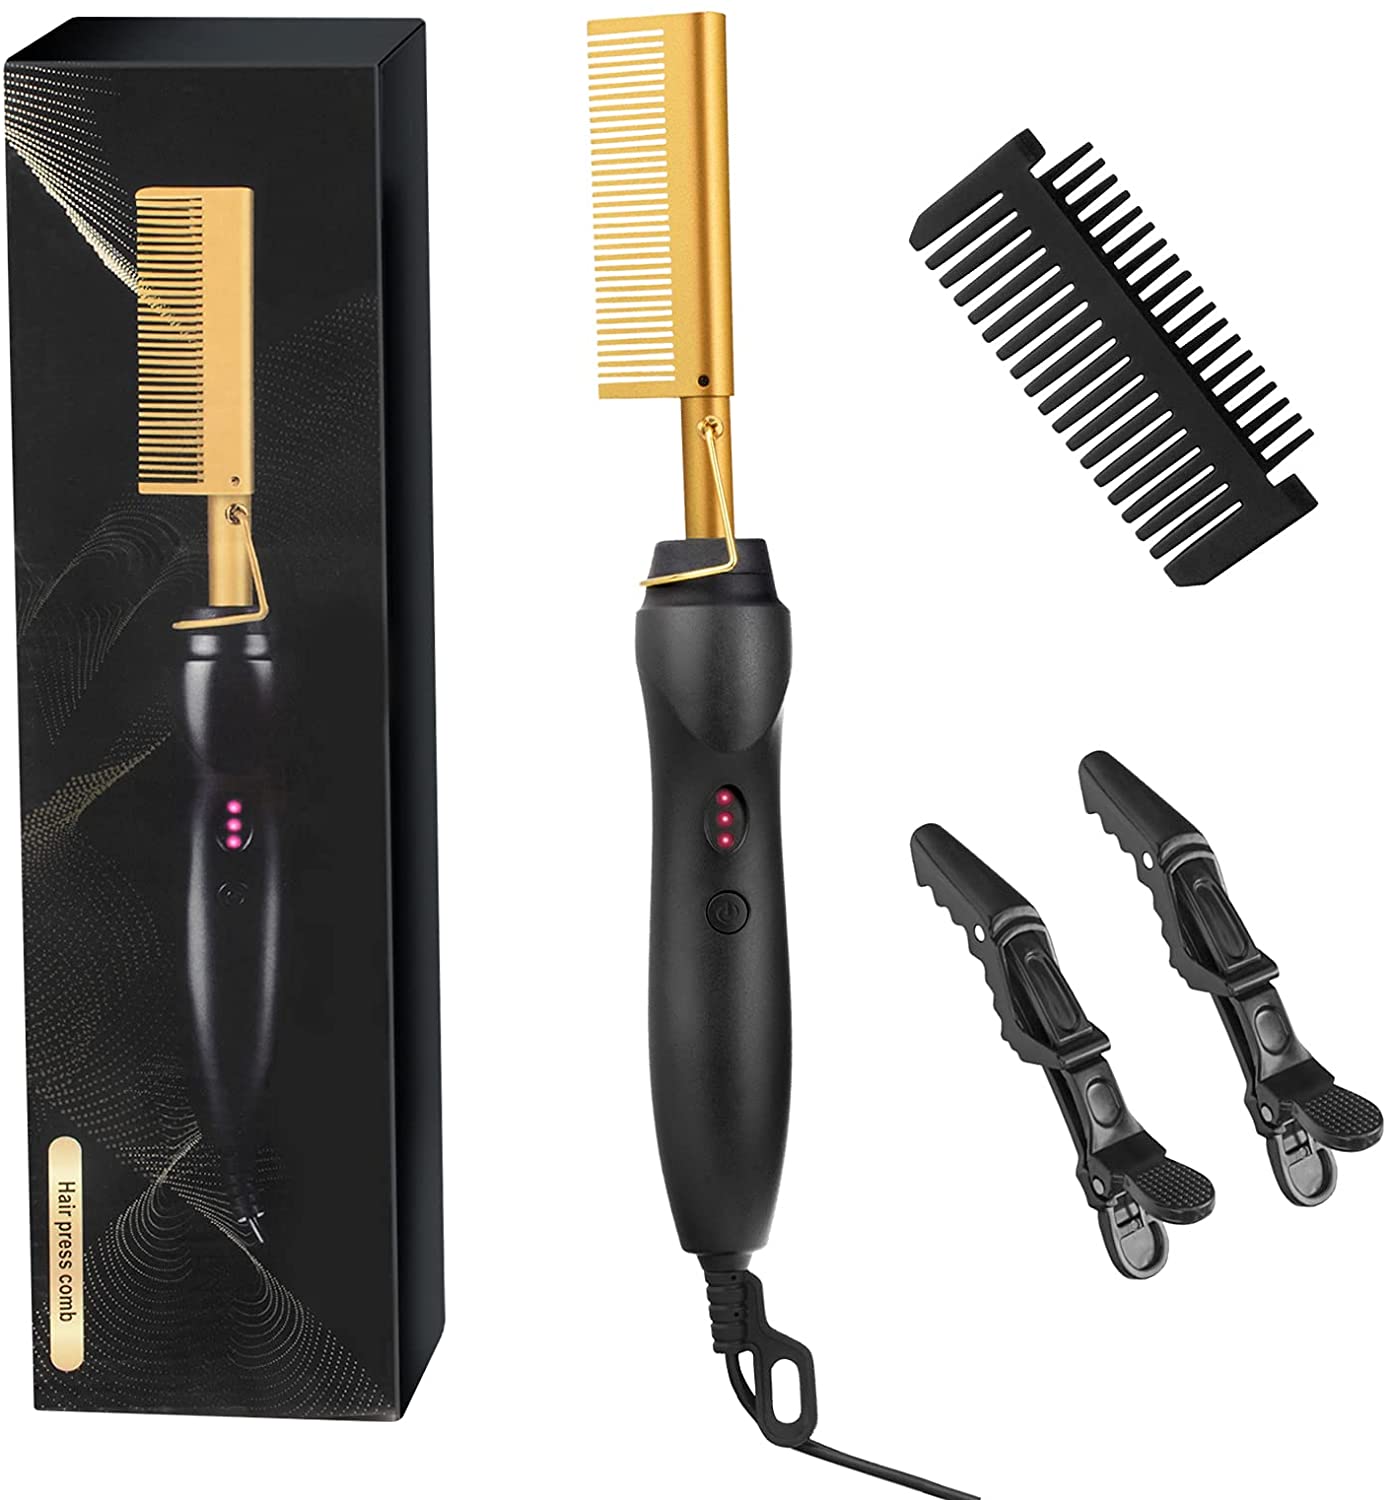 HairCombo™ 2 IN 1 Hair Straightener & Curler